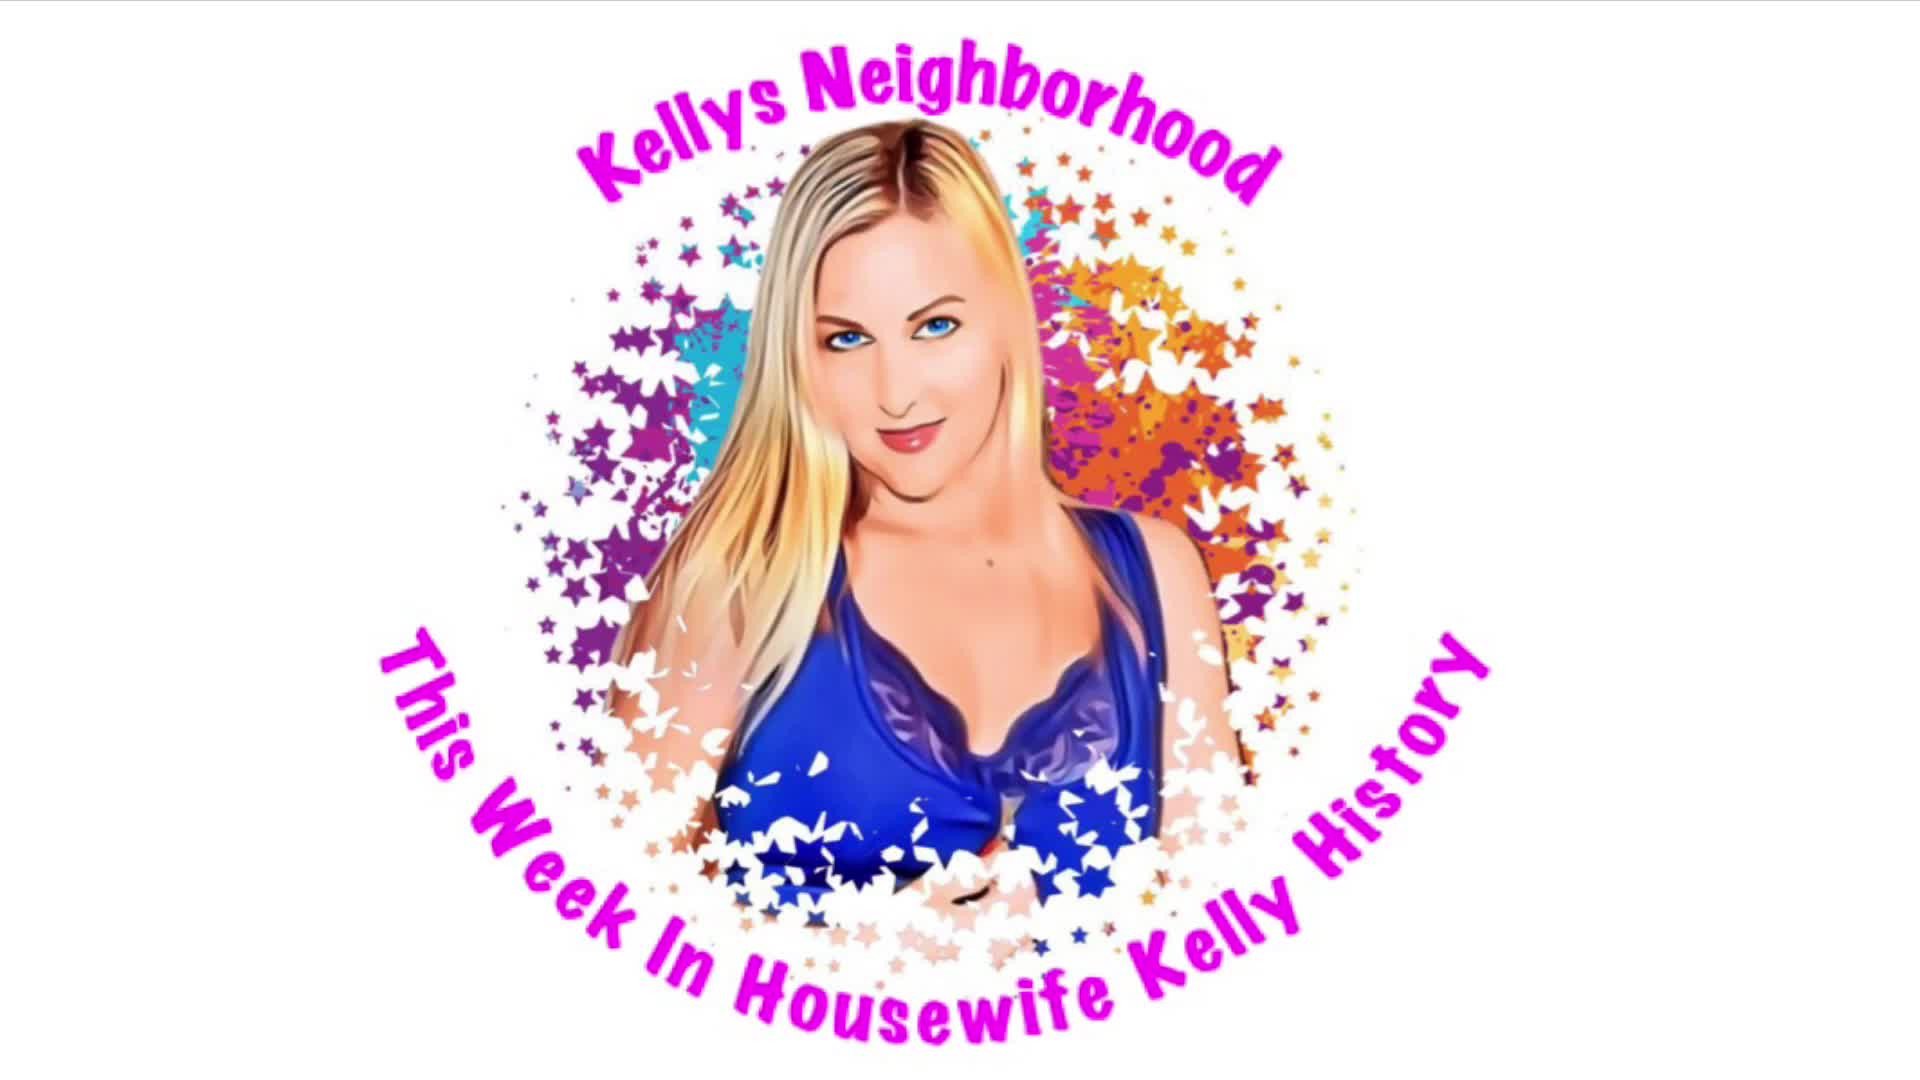 Video post by Kellys Neighborhood